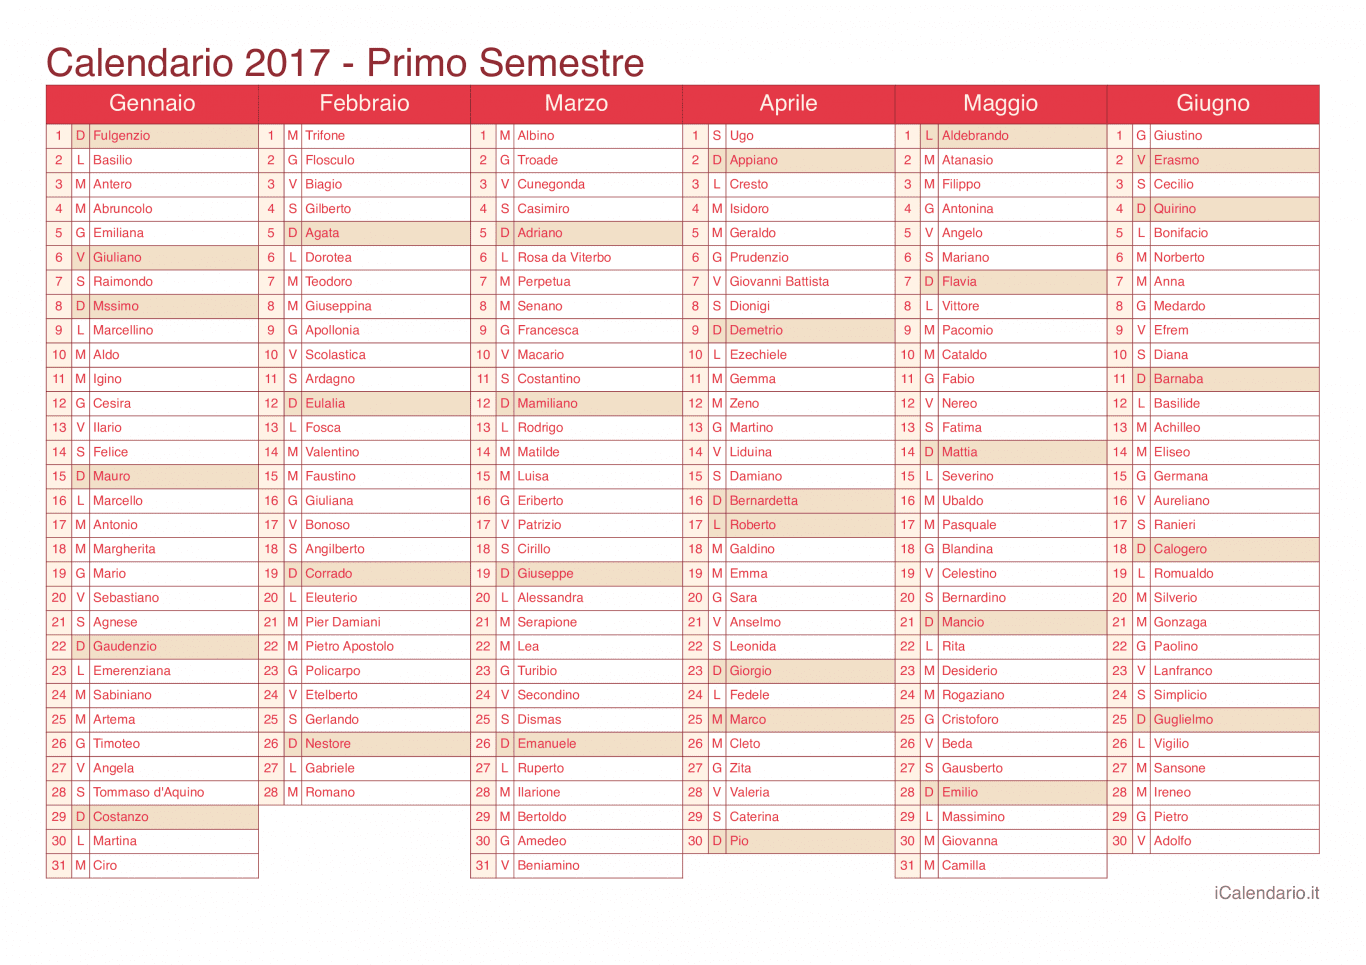 Calendario semestrale 2017 con santi e festivi - Cherry